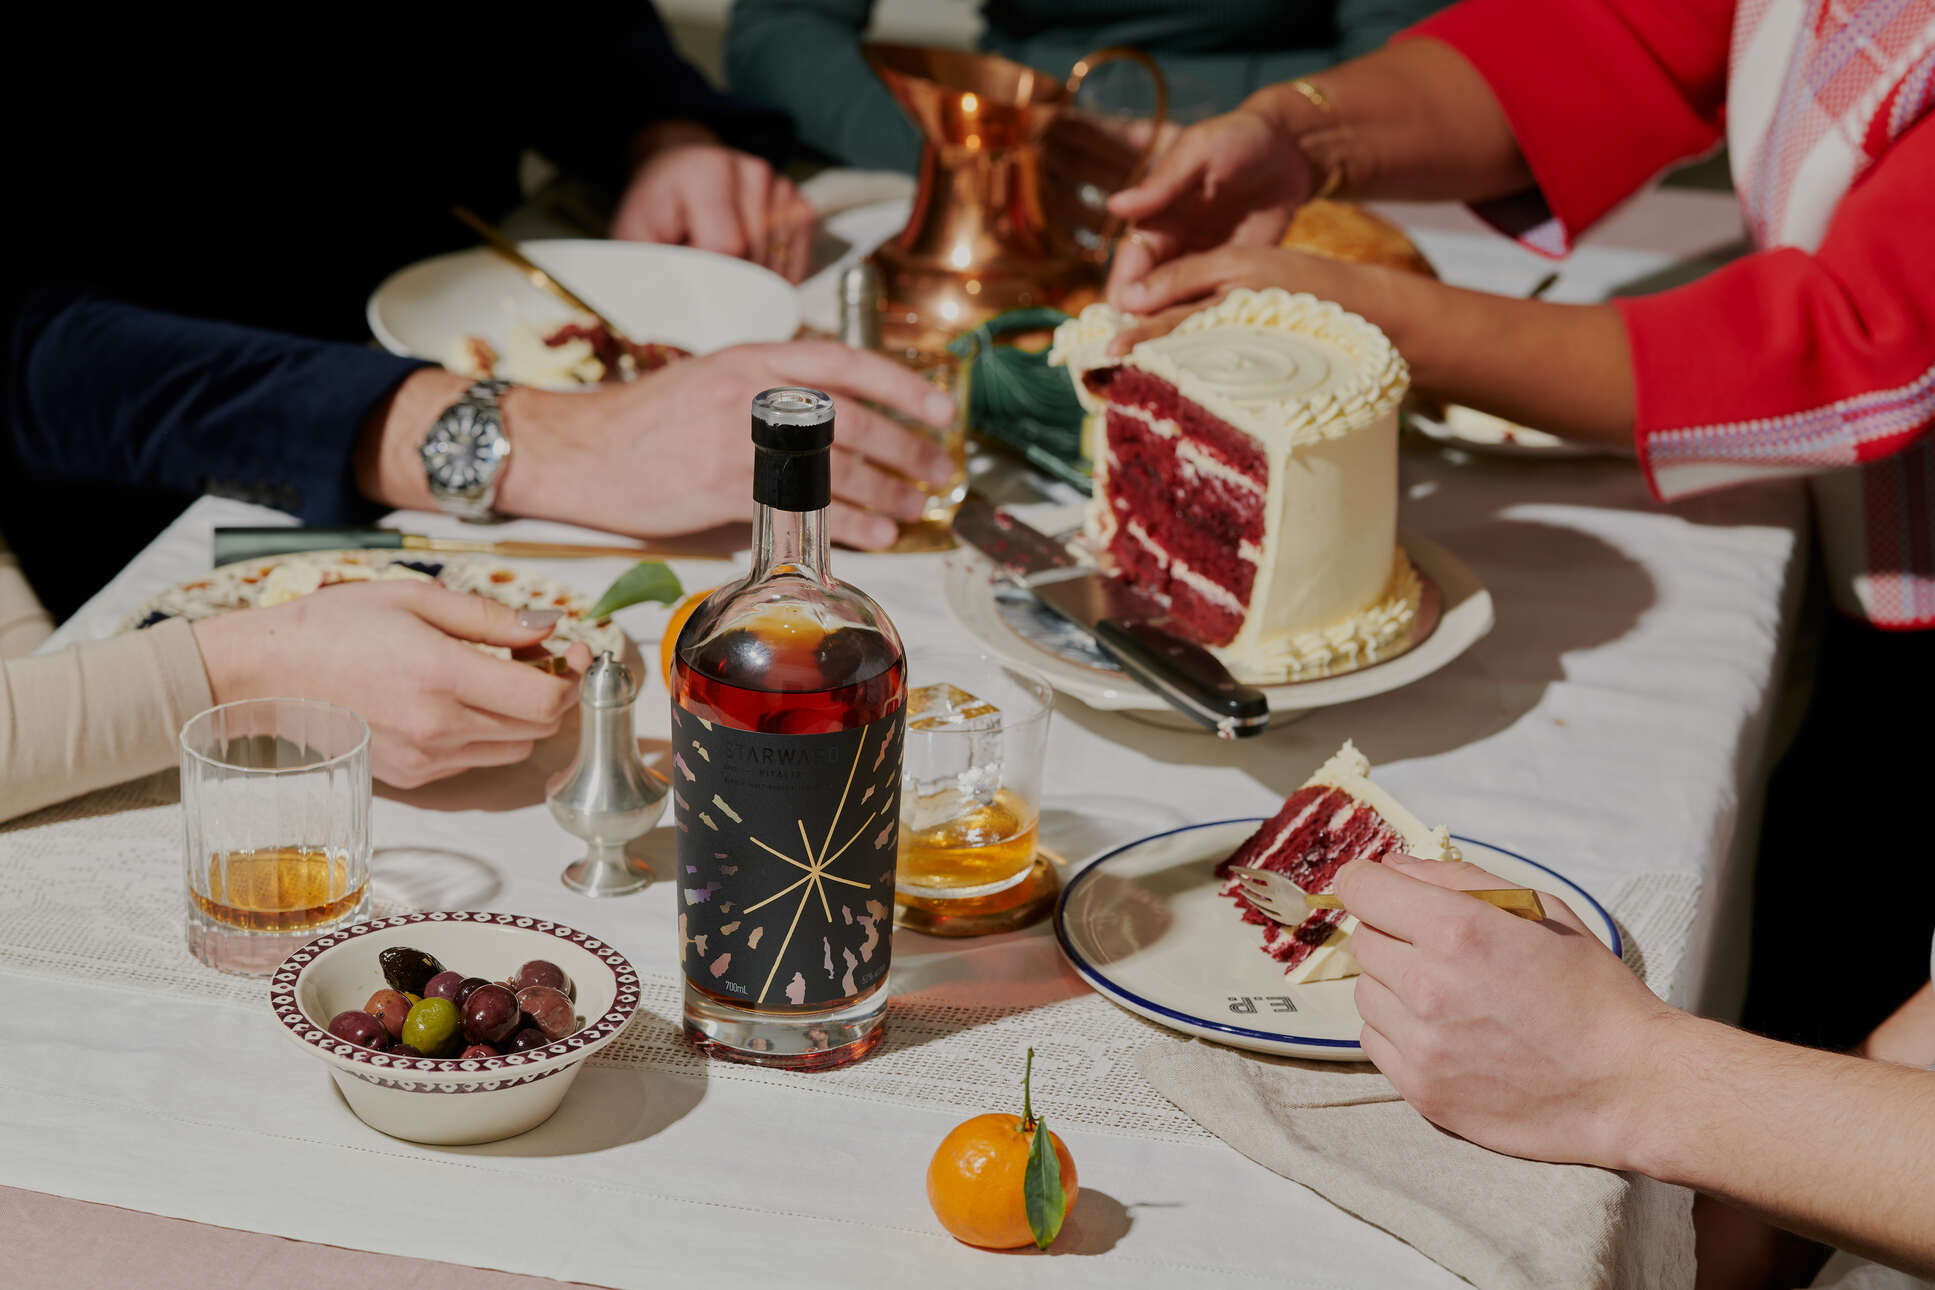 Vitalis Australian Whisky on the dinner table celebrating 15 years